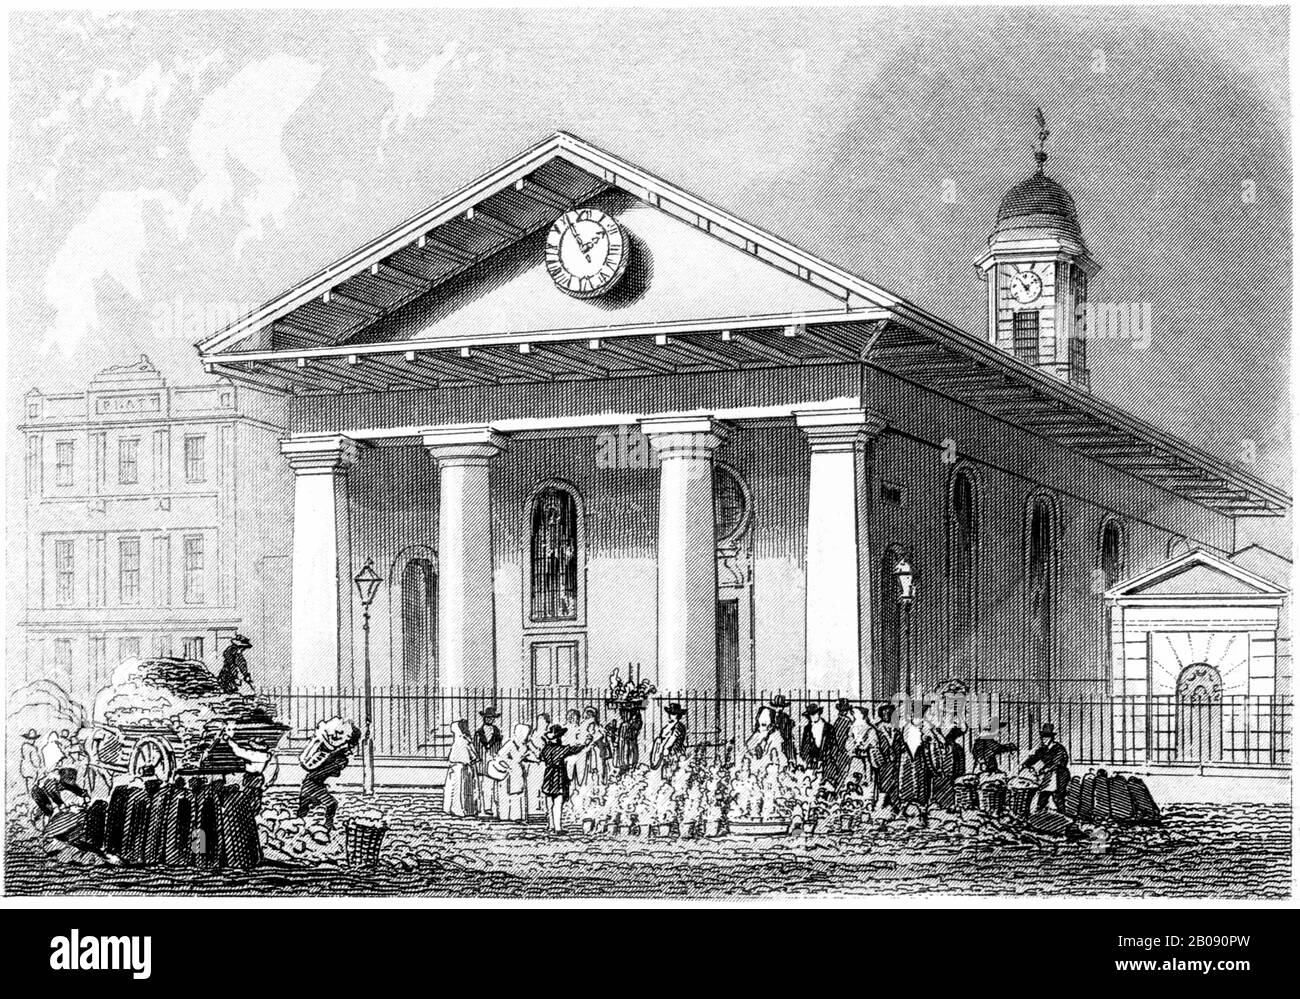 Gravur des St Pauls Covent Garden, London, gescannt in hoher Auflösung aus einem Buch, das im Jahr 1851 gedruckt wurde. Es wird angenommen, dass dieses Bild frei von allen Urheberrechten ist Stockfoto